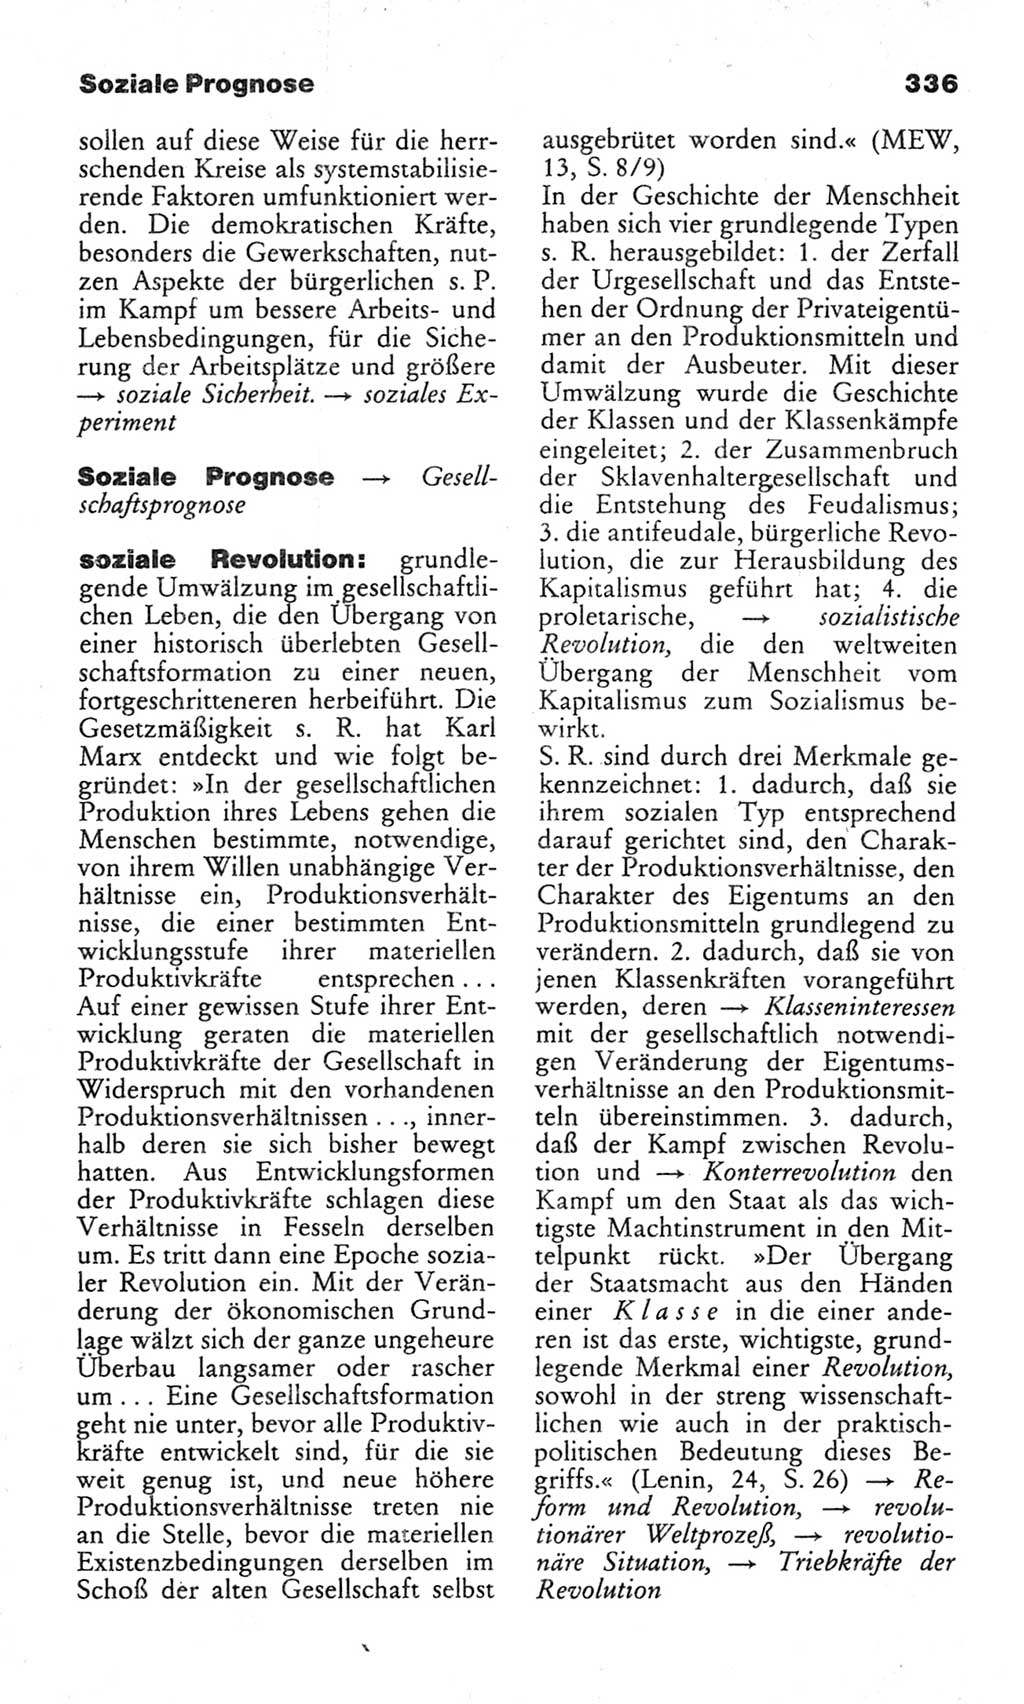 Wörterbuch des wissenschaftlichen Kommunismus [Deutsche Demokratische Republik (DDR)] 1982, Seite 336 (Wb. wiss. Komm. DDR 1982, S. 336)